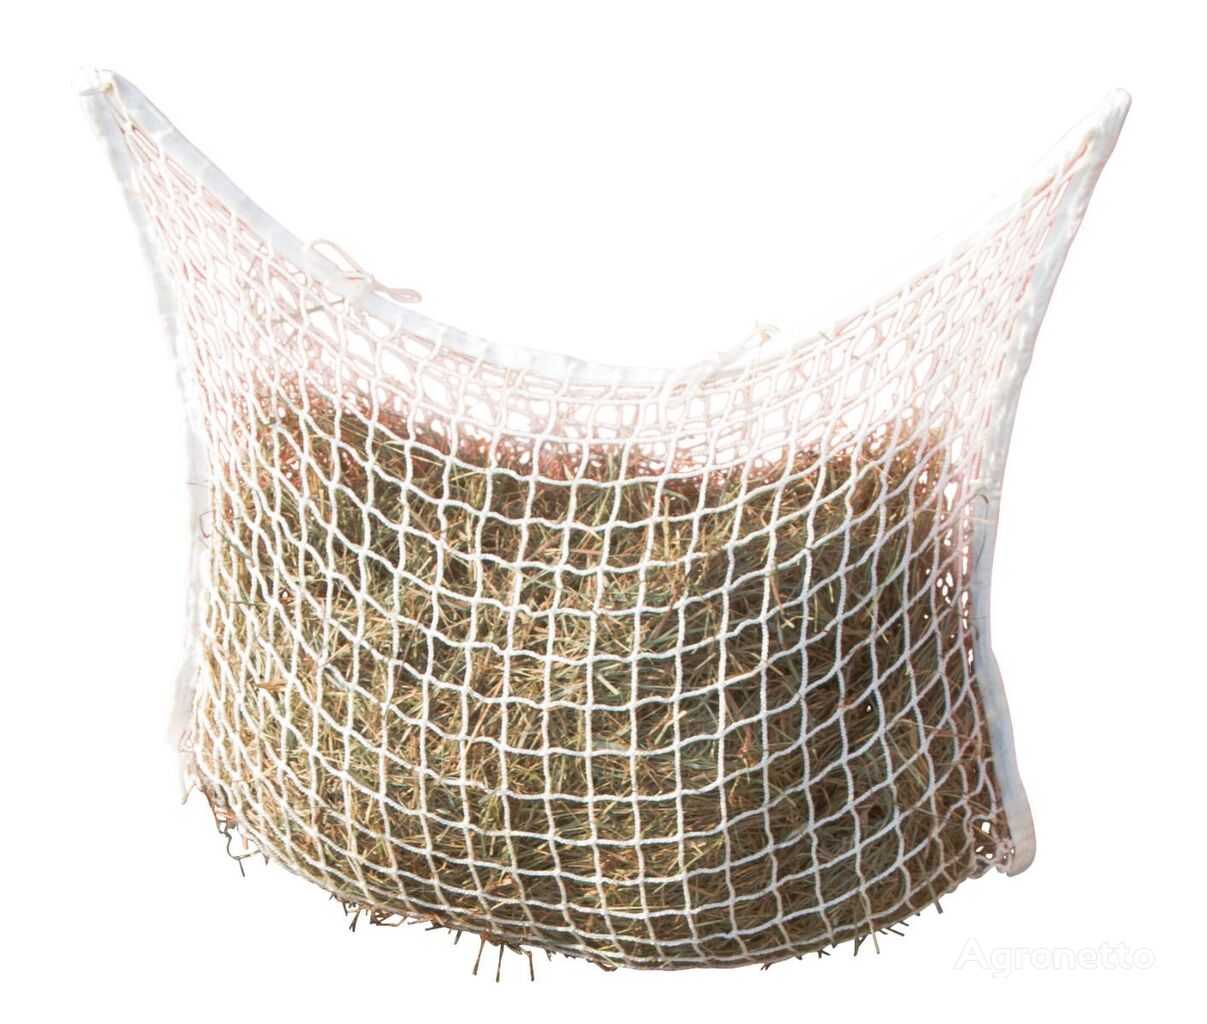 Kerbl hay net, white, 90 x 60 cm, mesh size: 3 x 3 cm